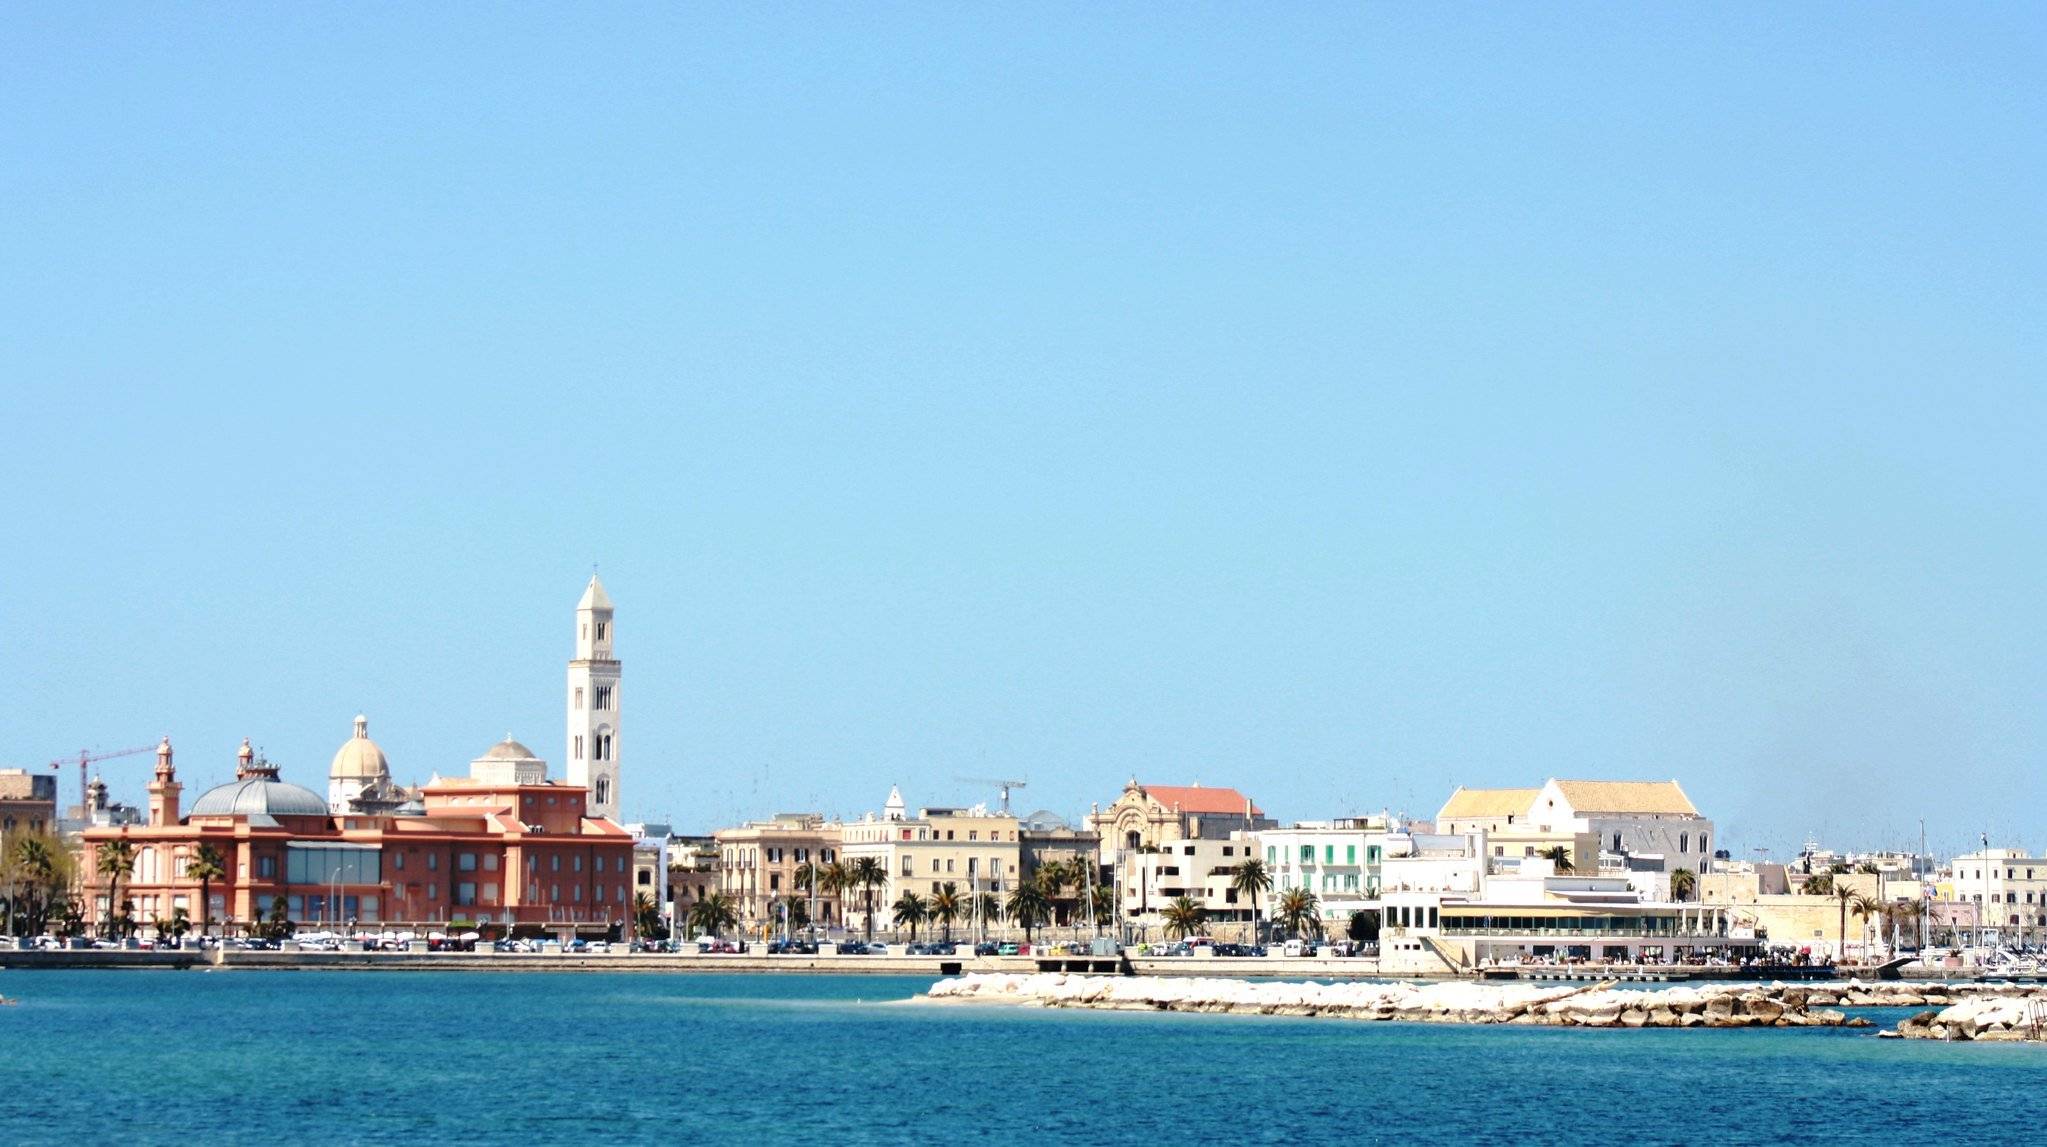 La ciudad costera de Bari